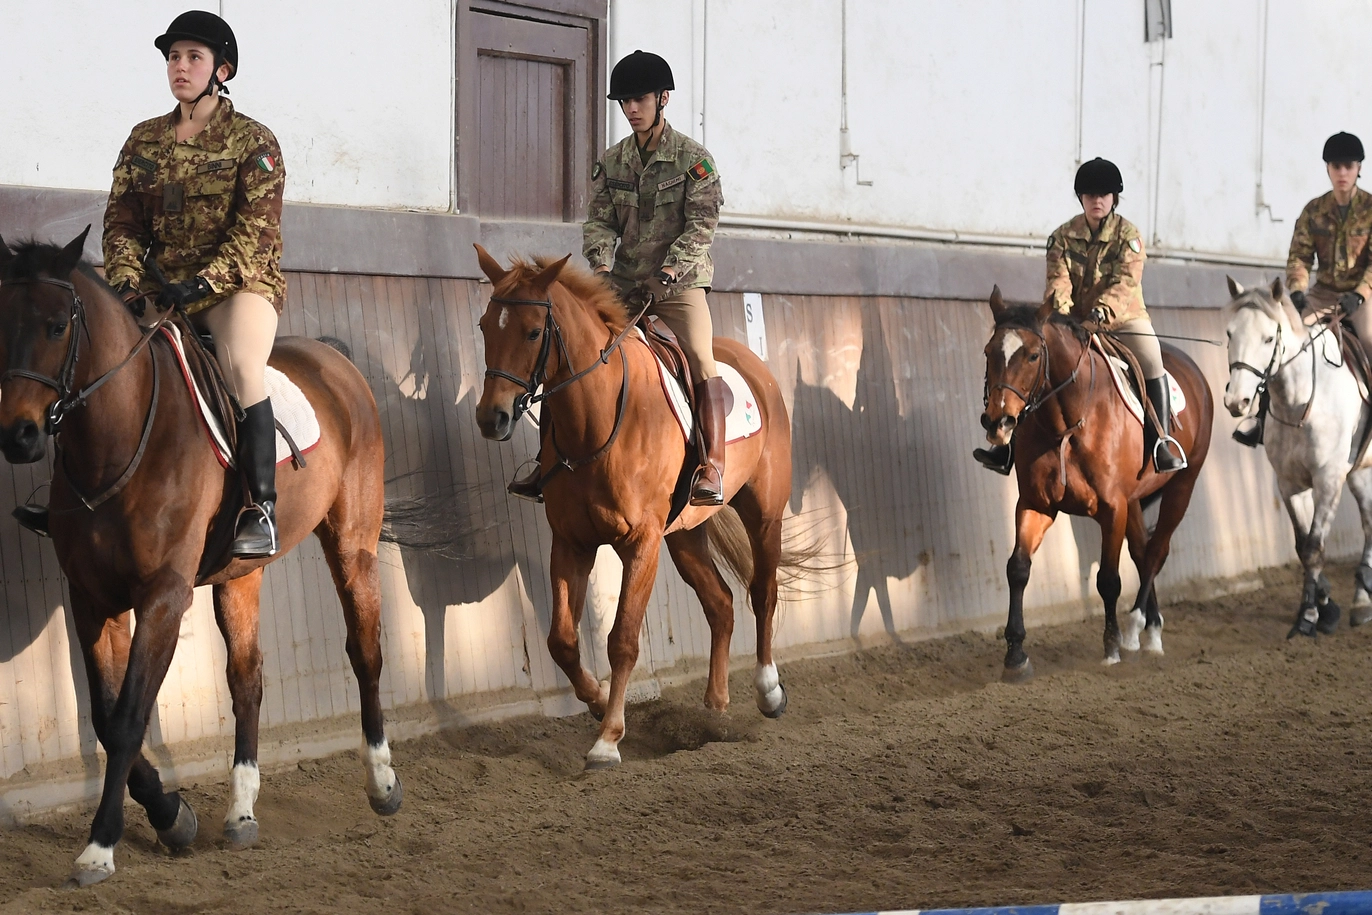 Un momento delle esercitazioni a cavallo (Foto Fiocchi)